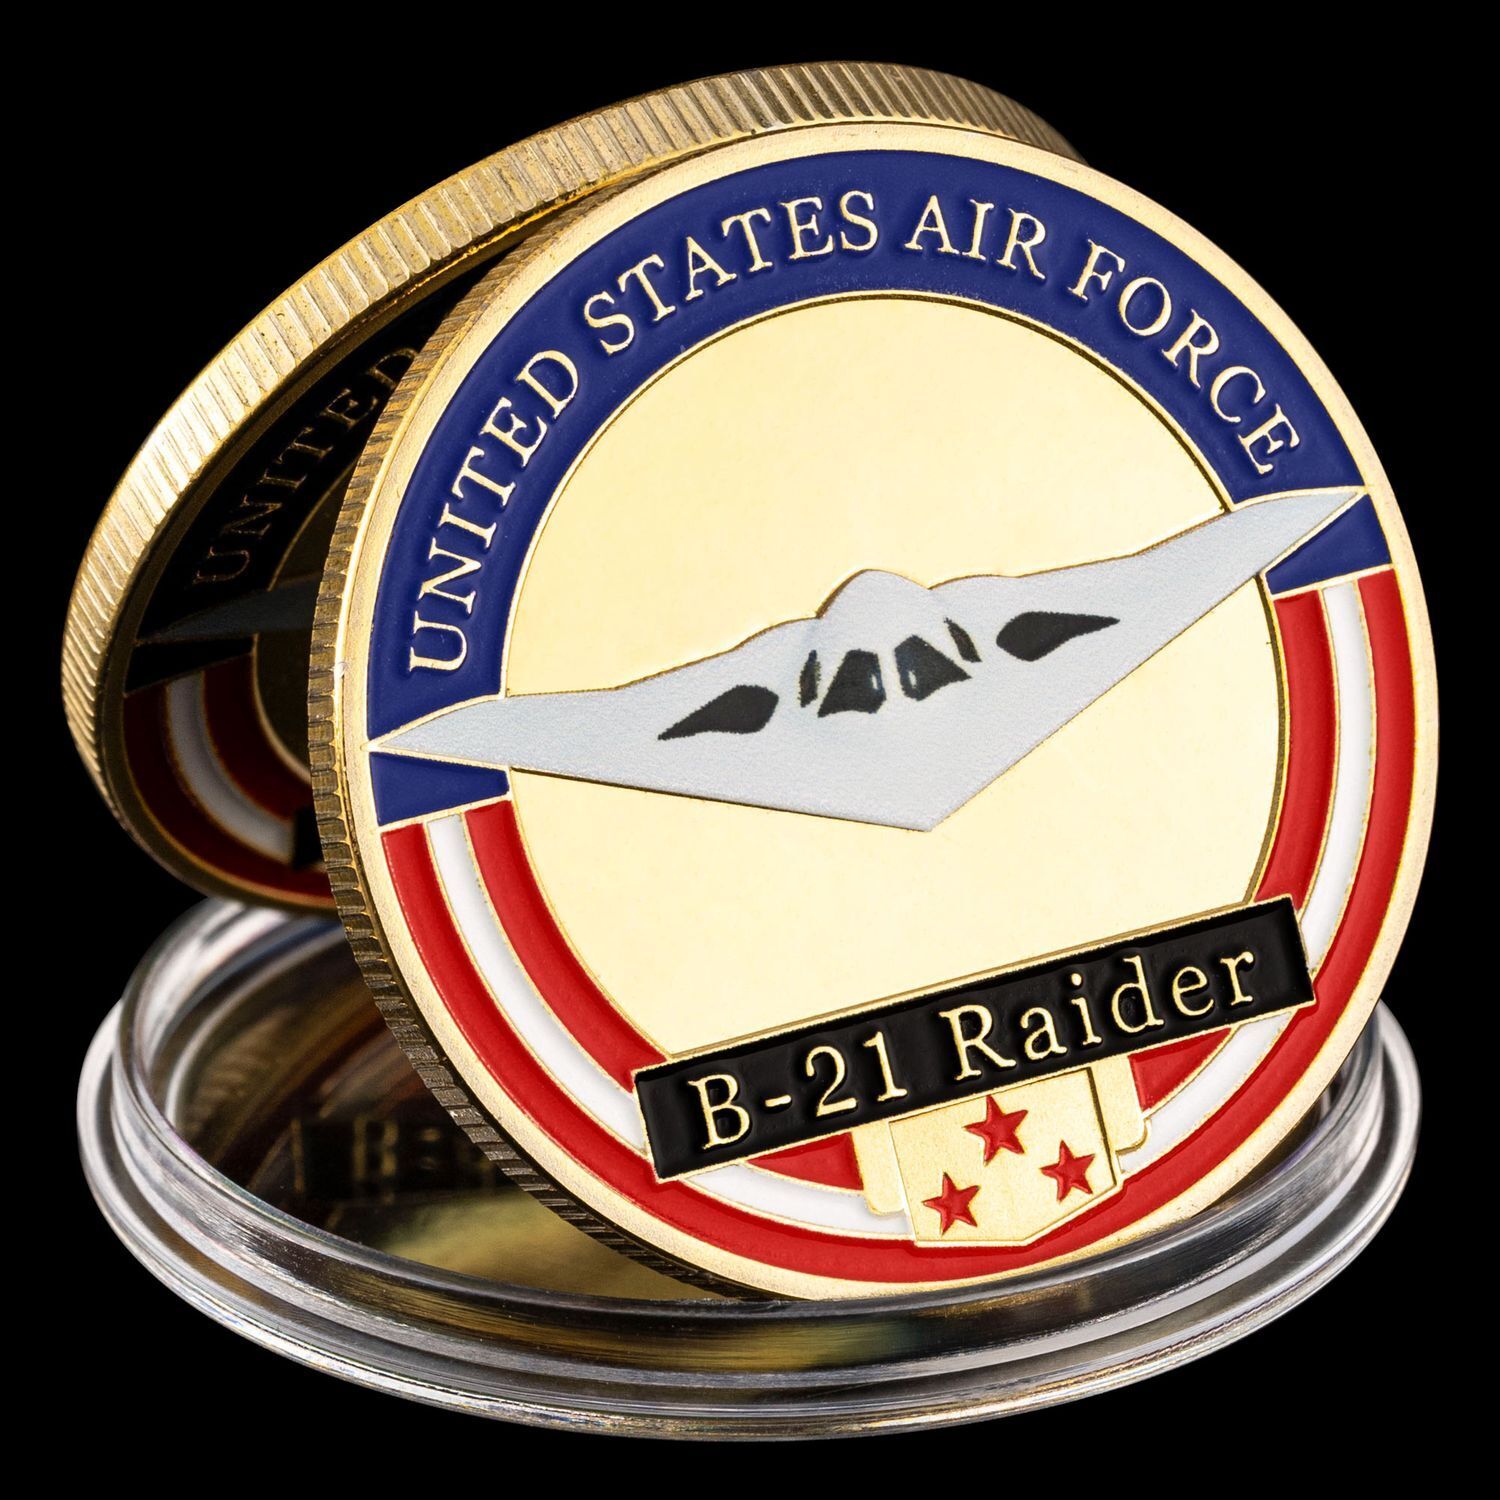 Air Force B-21 Raider Strategic Bomber